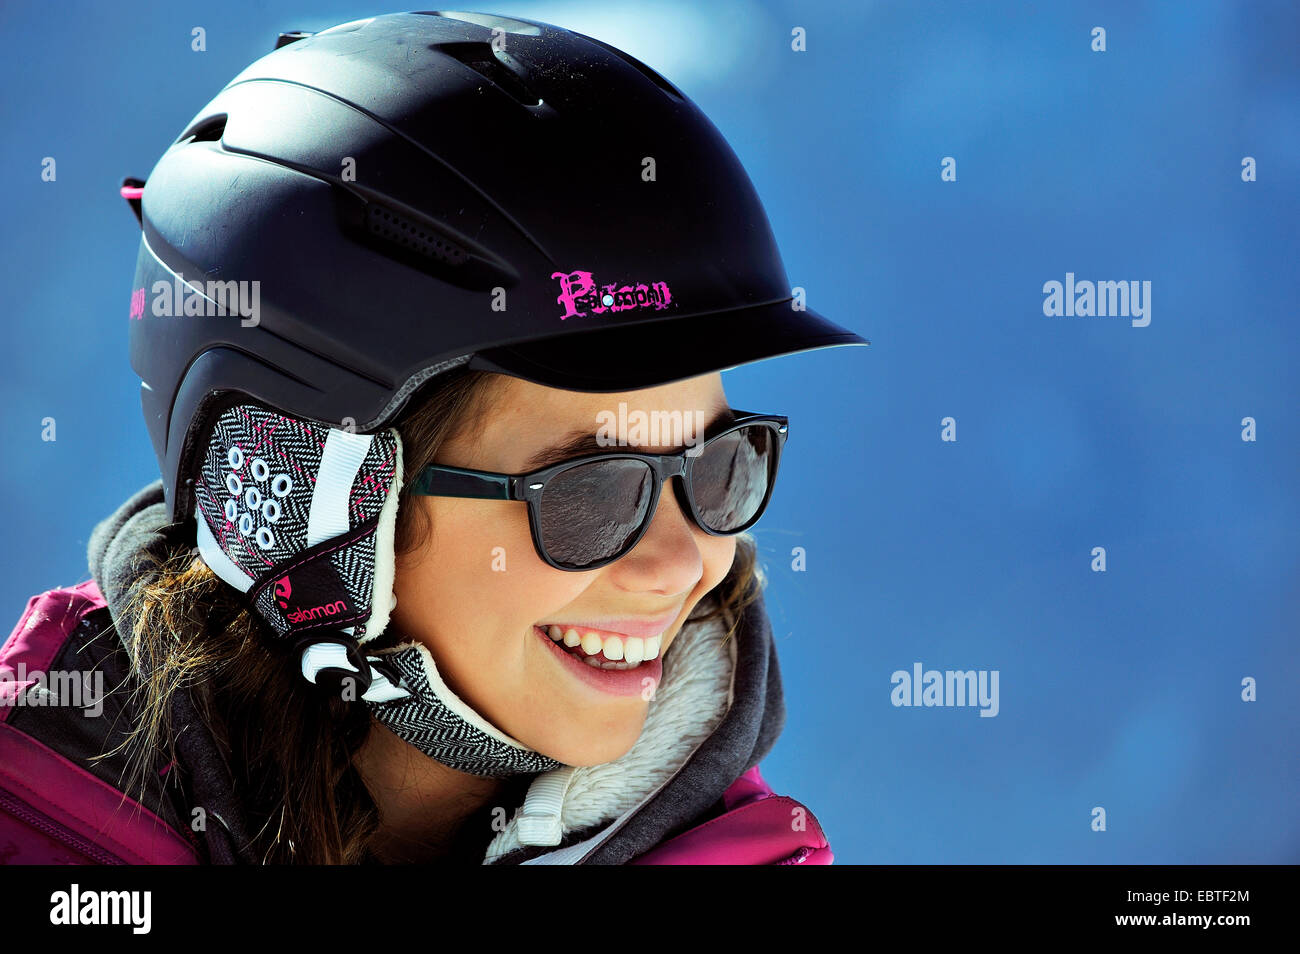 Mädchen mit Sonnenbrille und Ski Helm, Frankreich Stockfotografie - Alamy